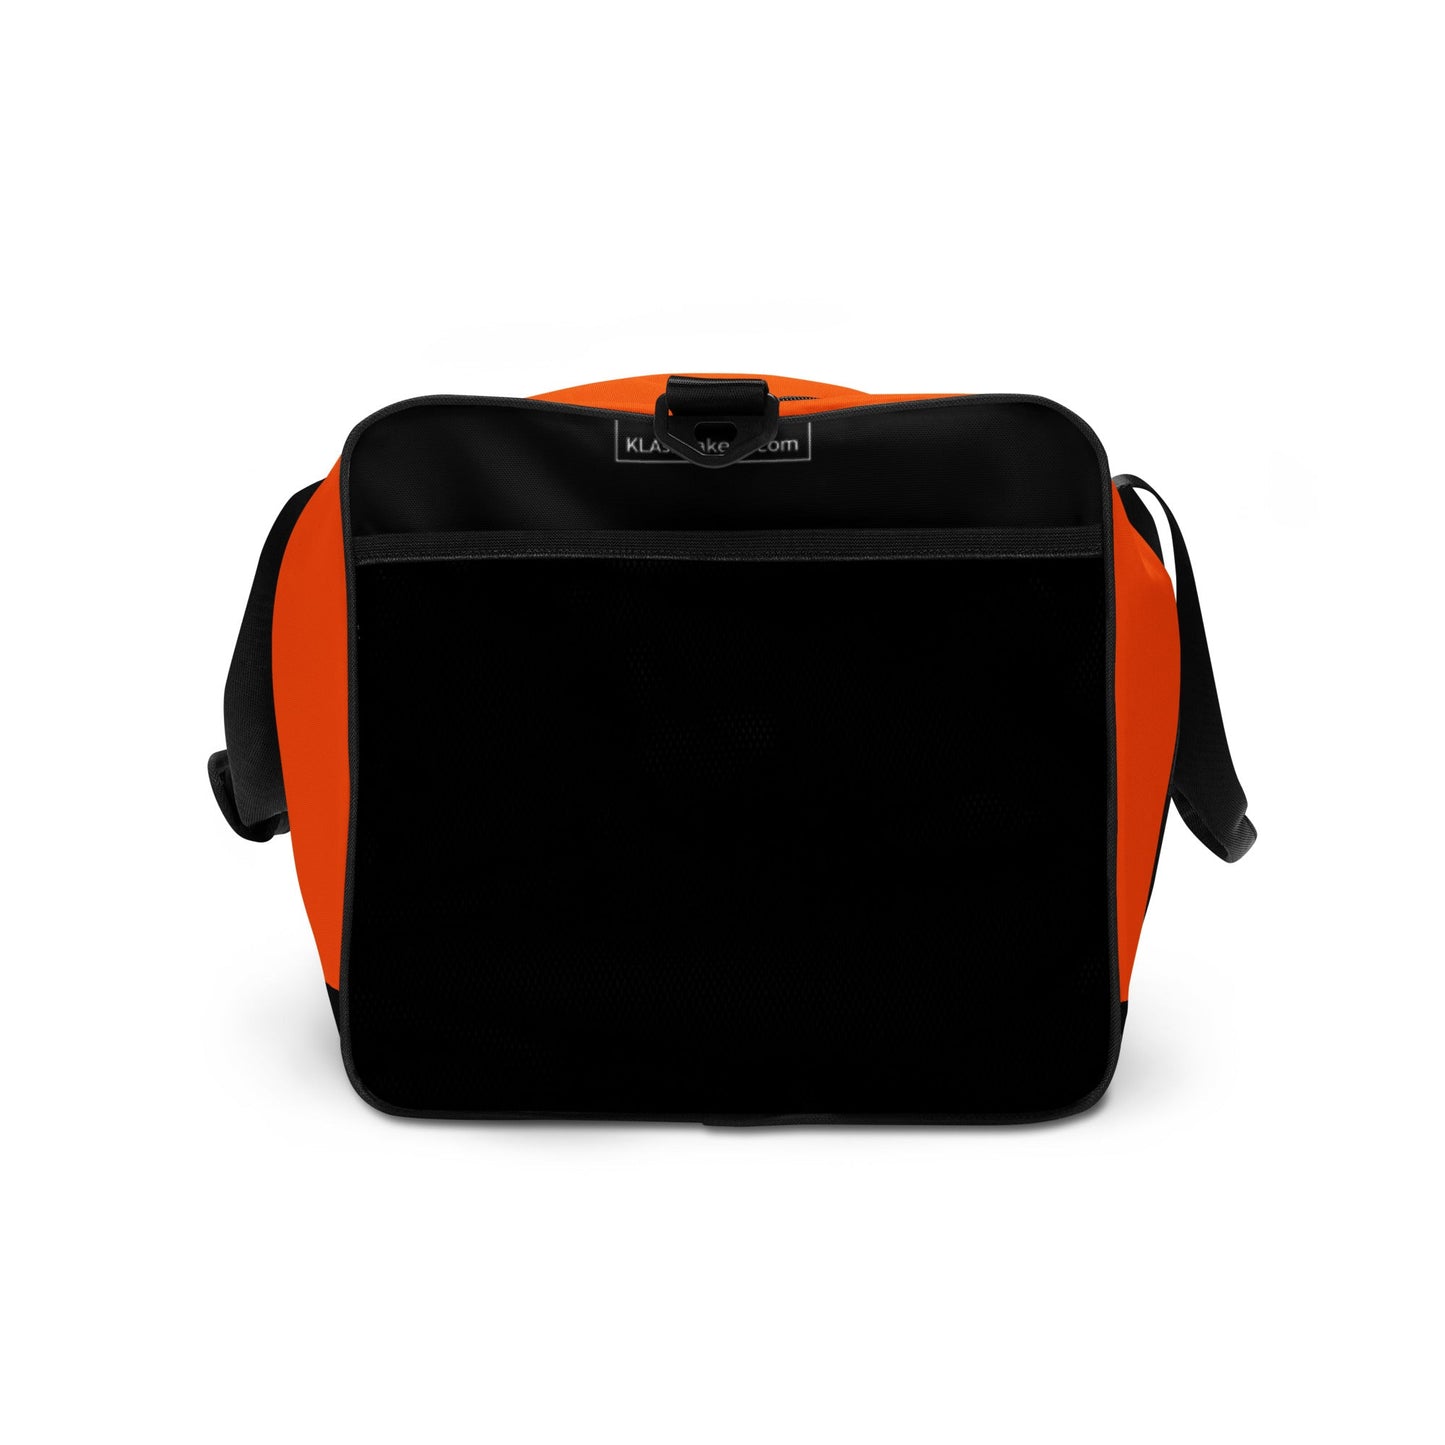 klasneakers KLA duffle bag - Electric Orange